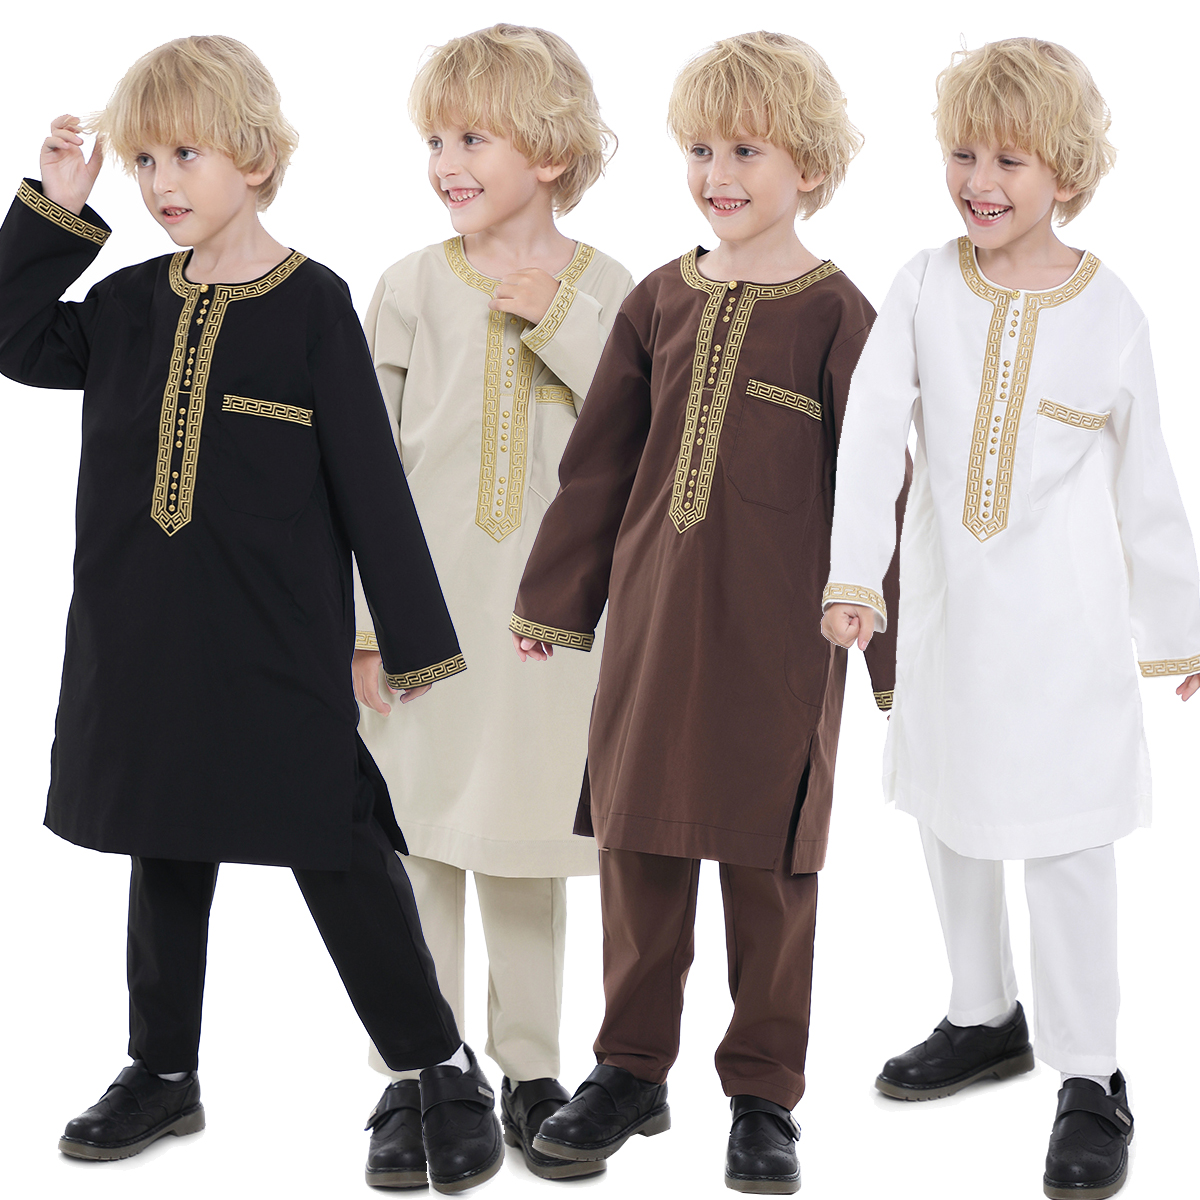 马来西亚中东迪拜刺绣印度巴基斯坦男孩名族服饰男童两件套套装饰